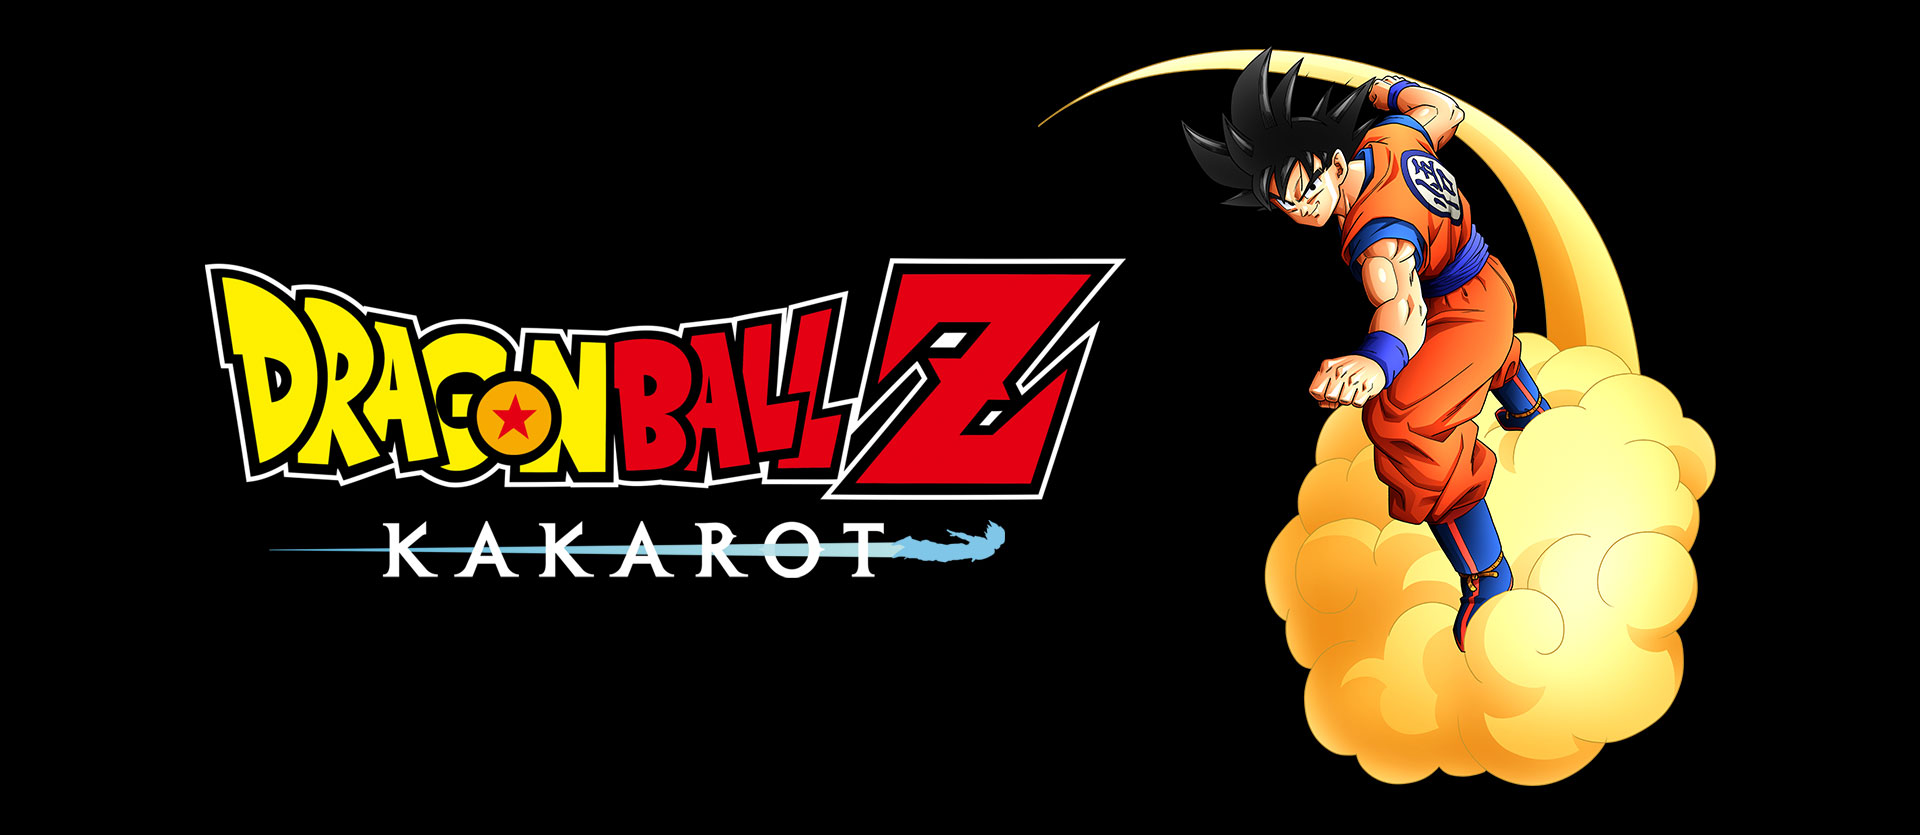 Dragon Ball Z: Kakarot - Gohan vs Majin Buu Full Fight (DBZ Kakarot 2020)  PS4 Pro 